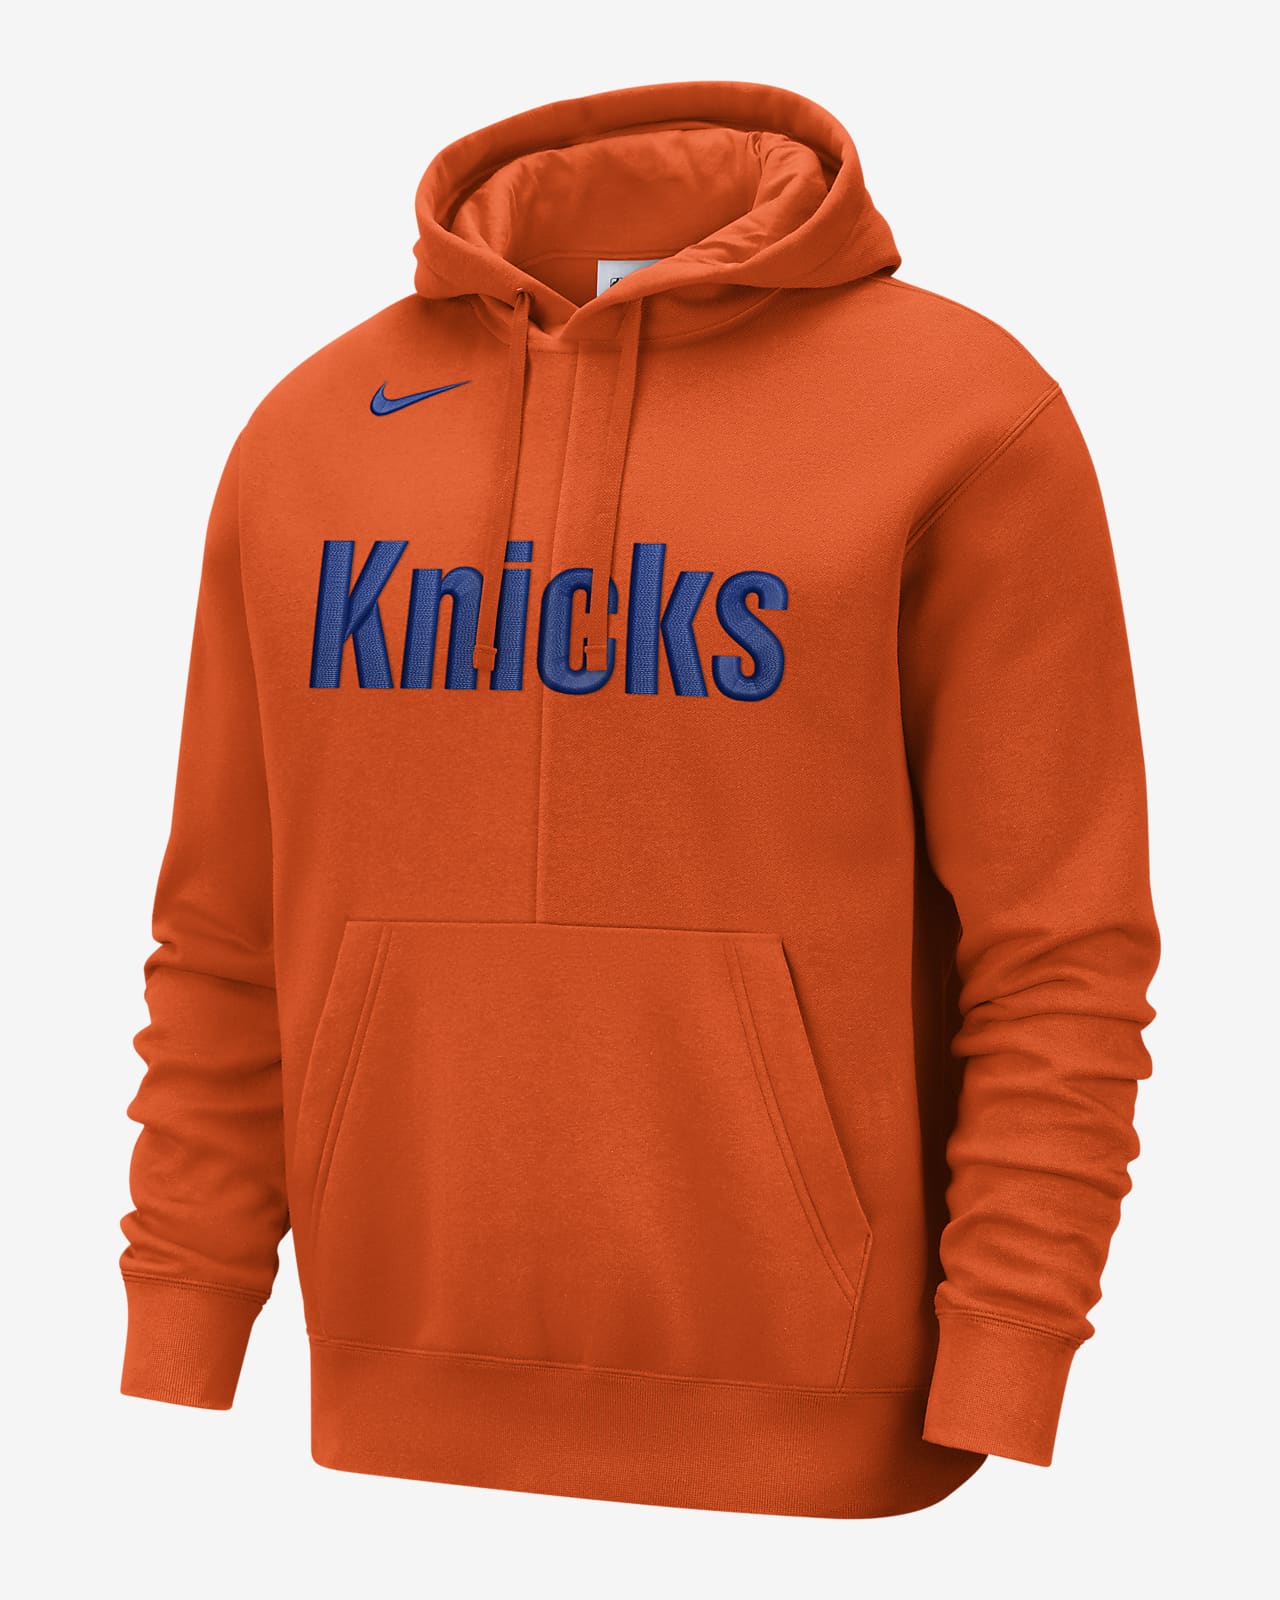 Sudadera con gorro sin cierre de tejido Fleece Nike de la para hombre New York Knicks Courtside. Nike.com